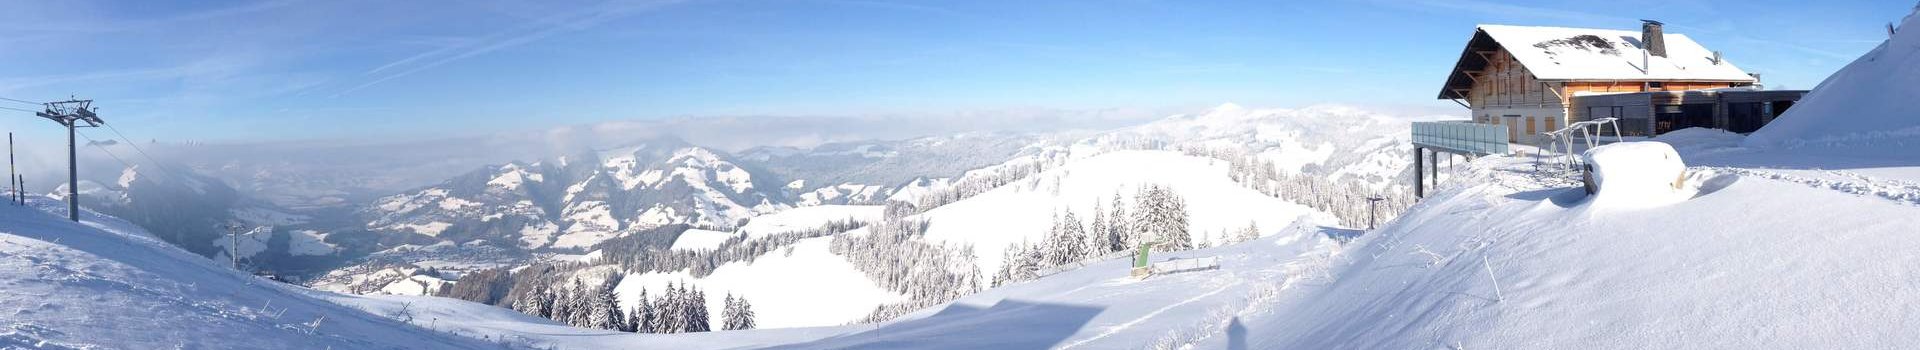 Miejsca w Polsce, które warto odwiedzić z nartami/snowboardem